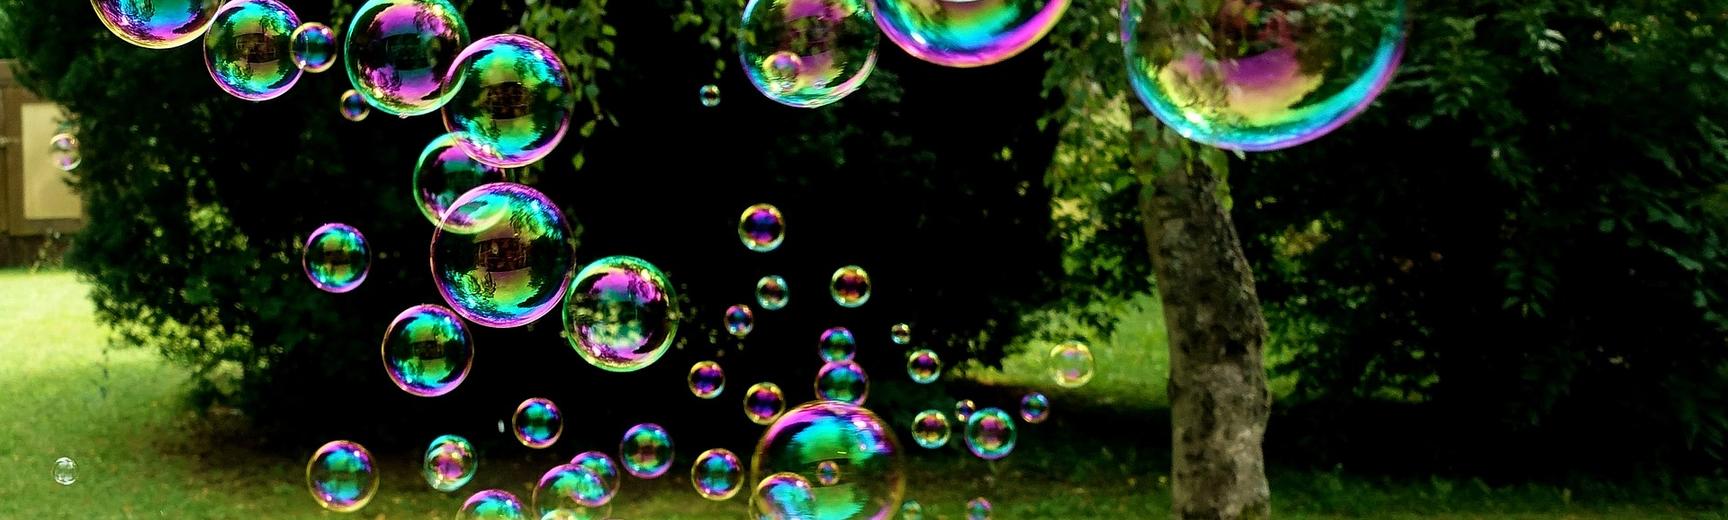 Soap bubbles in a garden